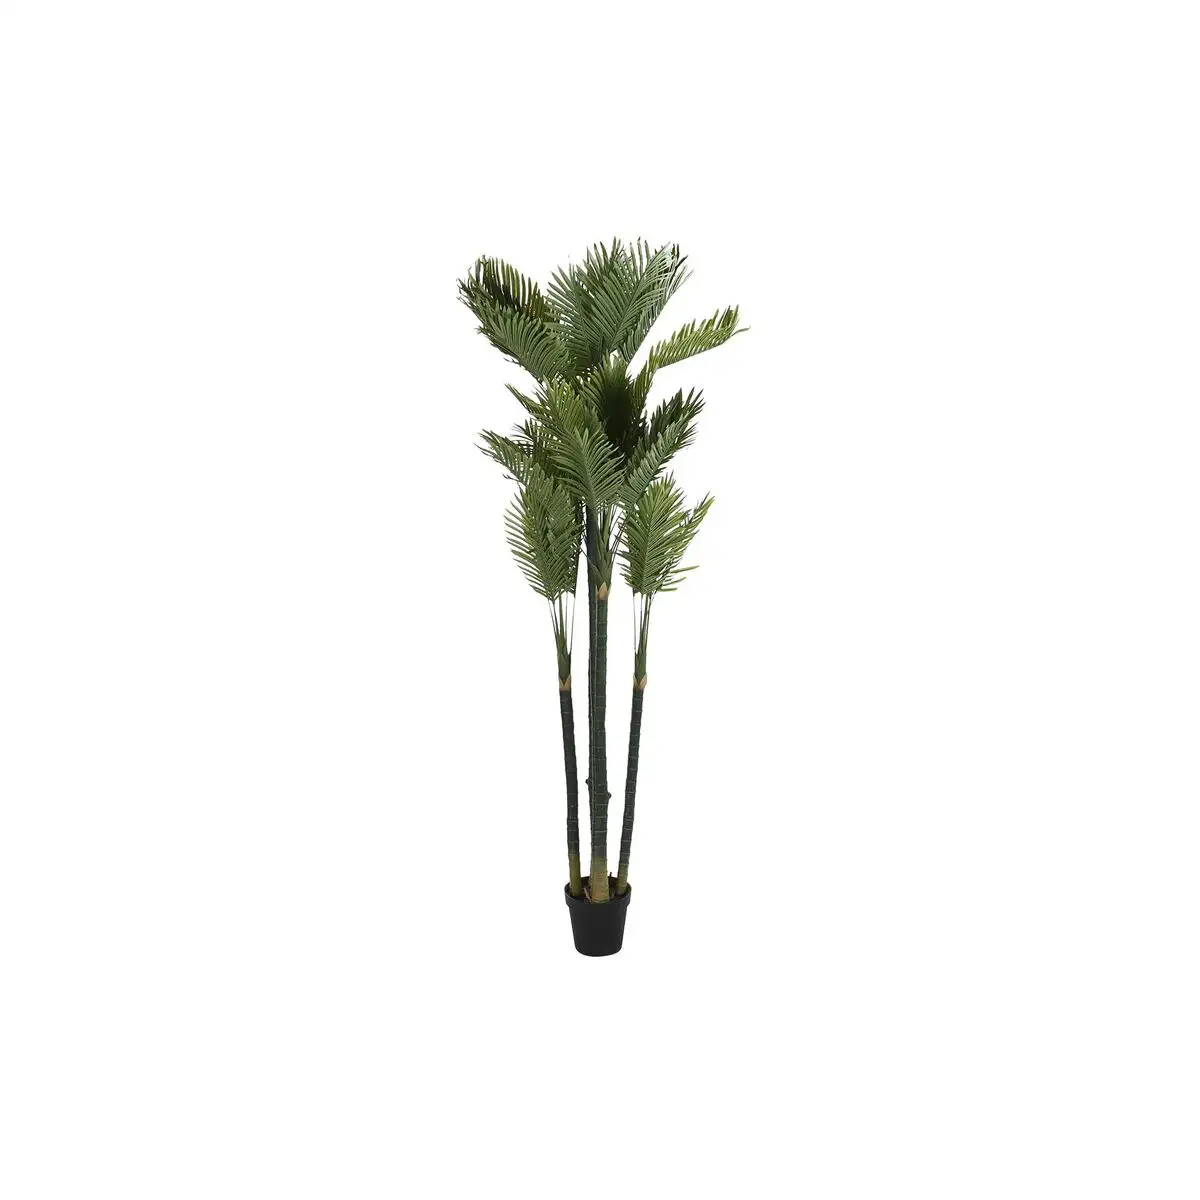 Plante decorative dkd home decor palmier 100 x 100 x 230 cm _2901. DIAYTAR SENEGAL - Où Choisir est une Célébration. Découvrez notre sélection de produits qui représentent la diversité et la joie du Sénégal, à chaque étape de votre vie.